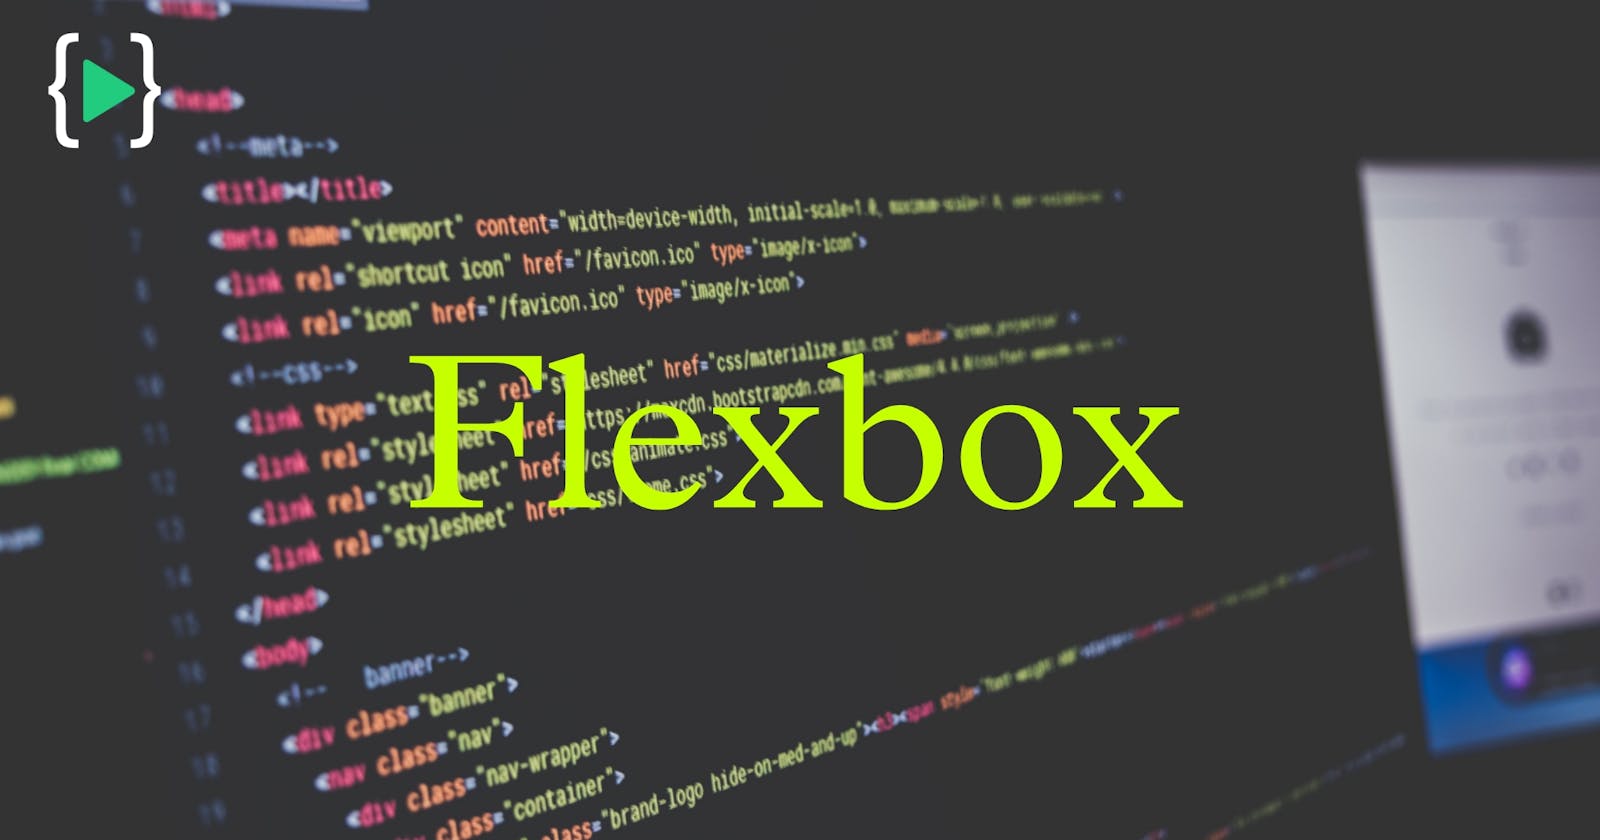 The Flexbox